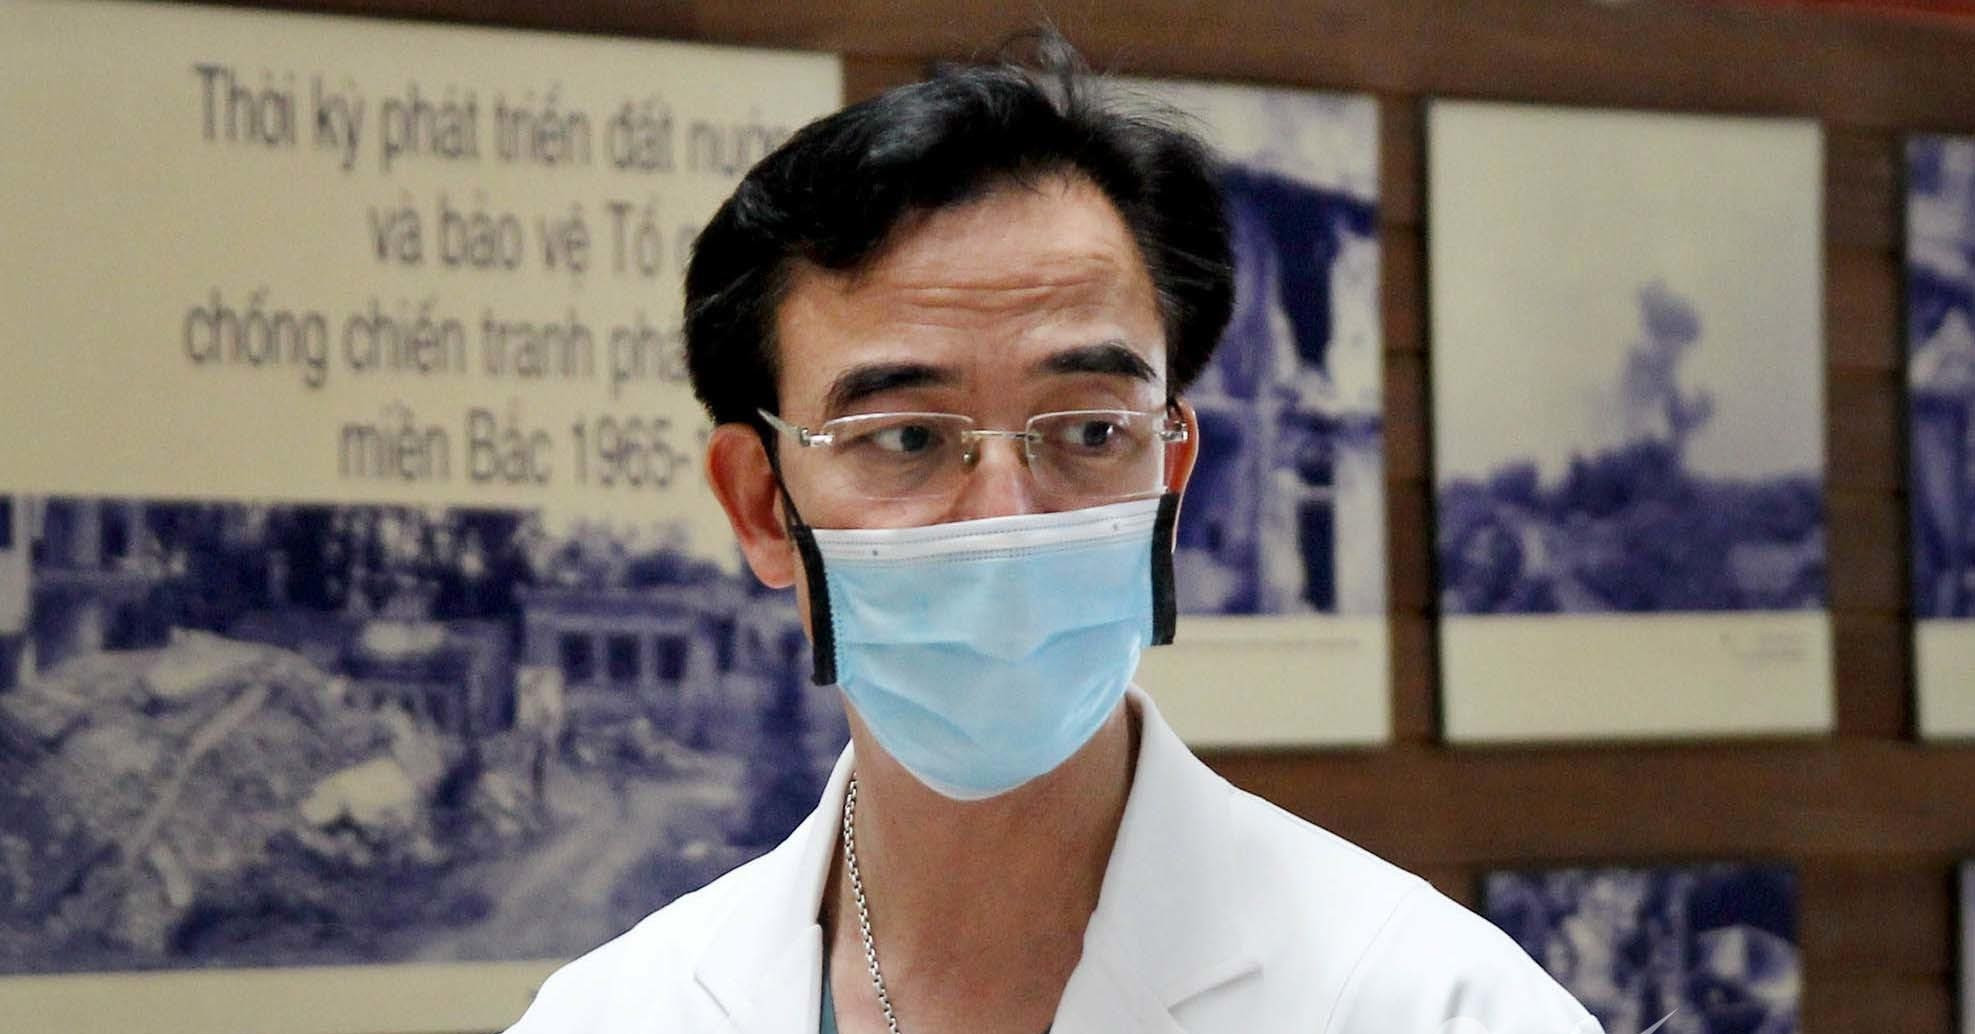 Tác động của vụ việc liên quan đến Nguyễn Quang Tuấn tới uy tín của Bệnh viện Tim Hà Nội và hệ thống y tế Việt Nam?
